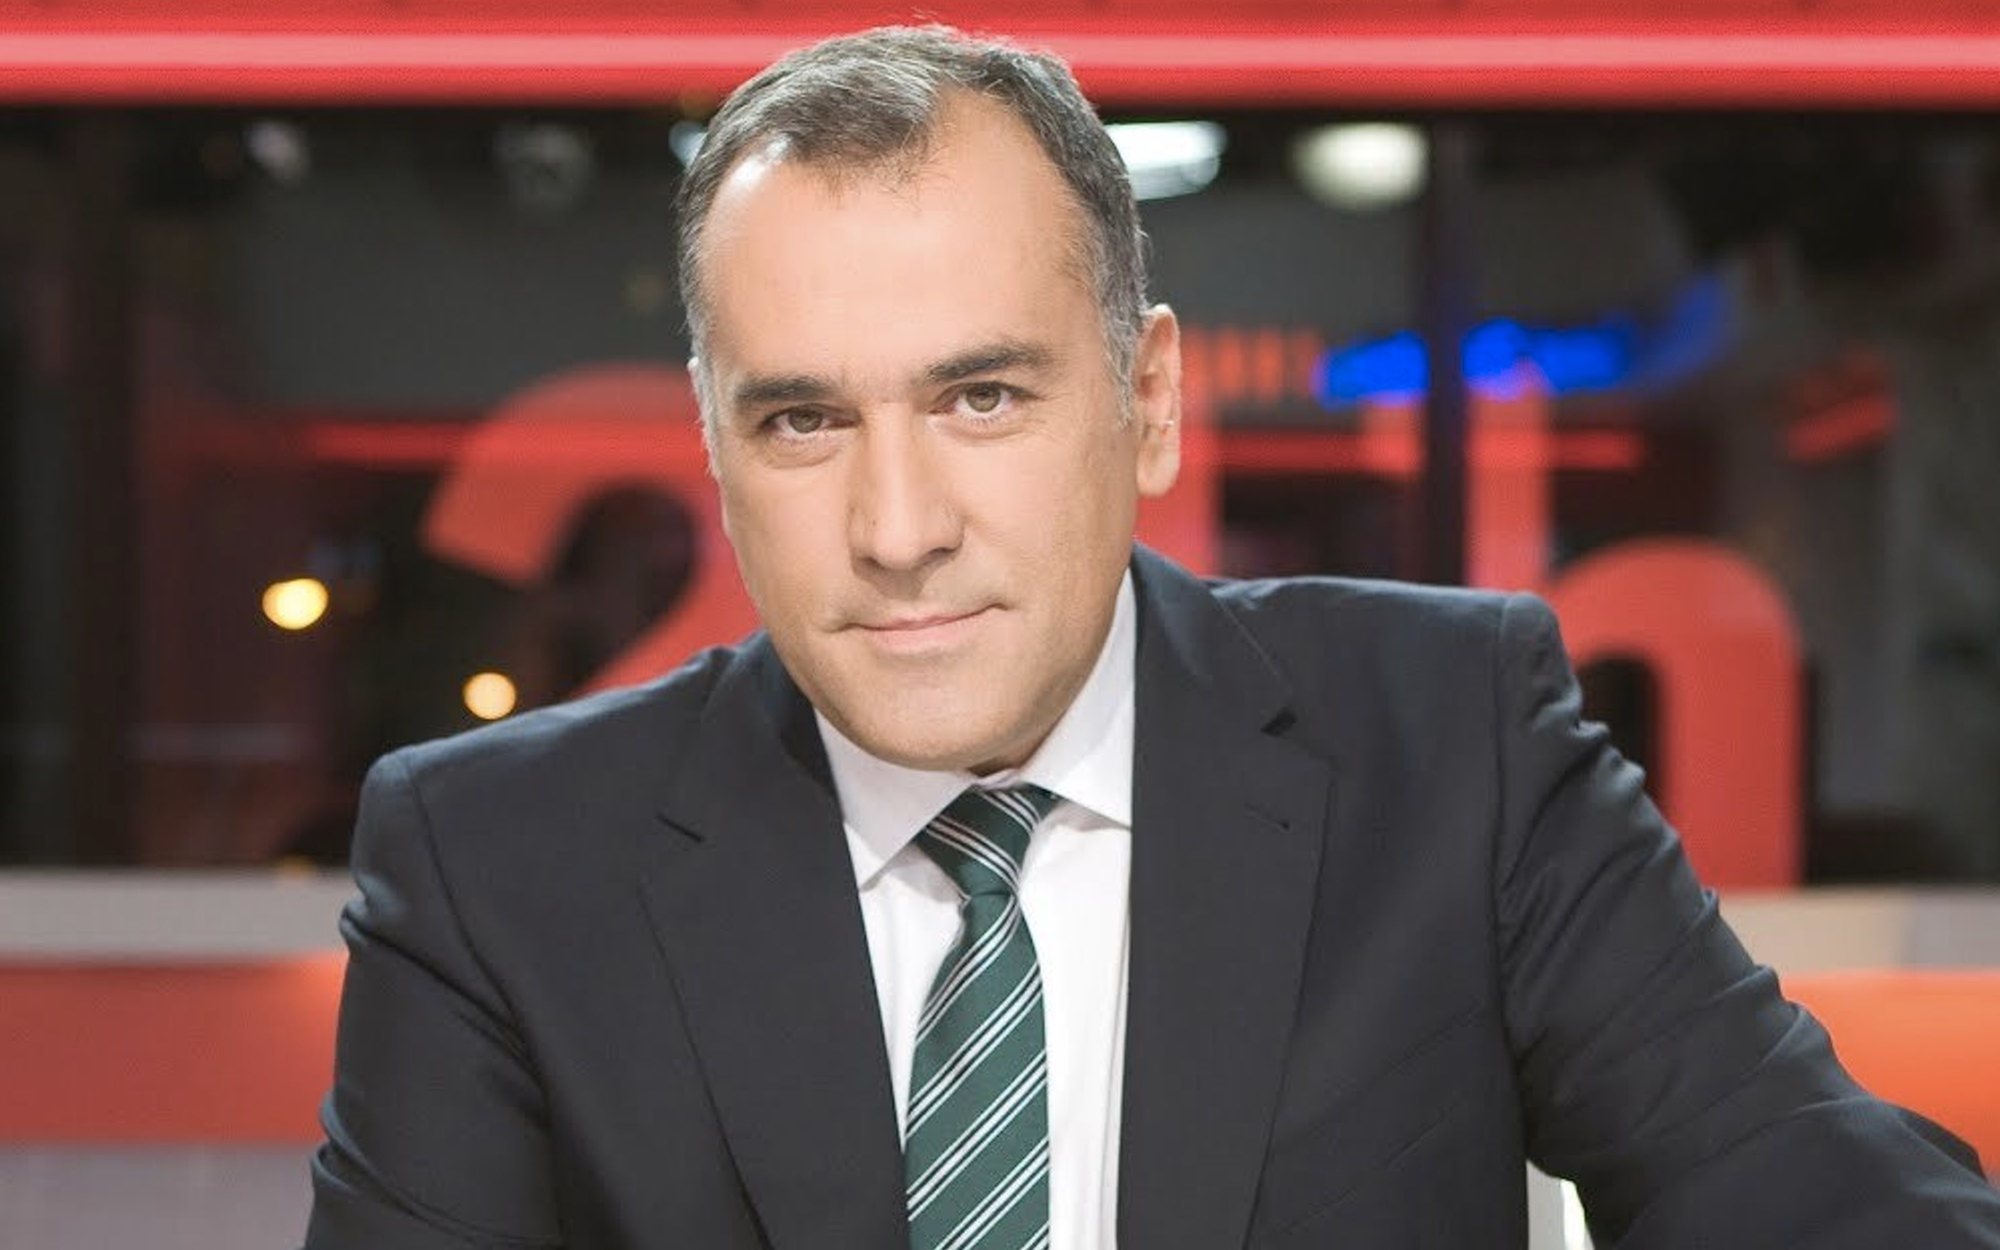 La despedida de Xabier Fortes a 'Los desayunos de TVE' tras 26 años en antena: "Esto ha sido todo"